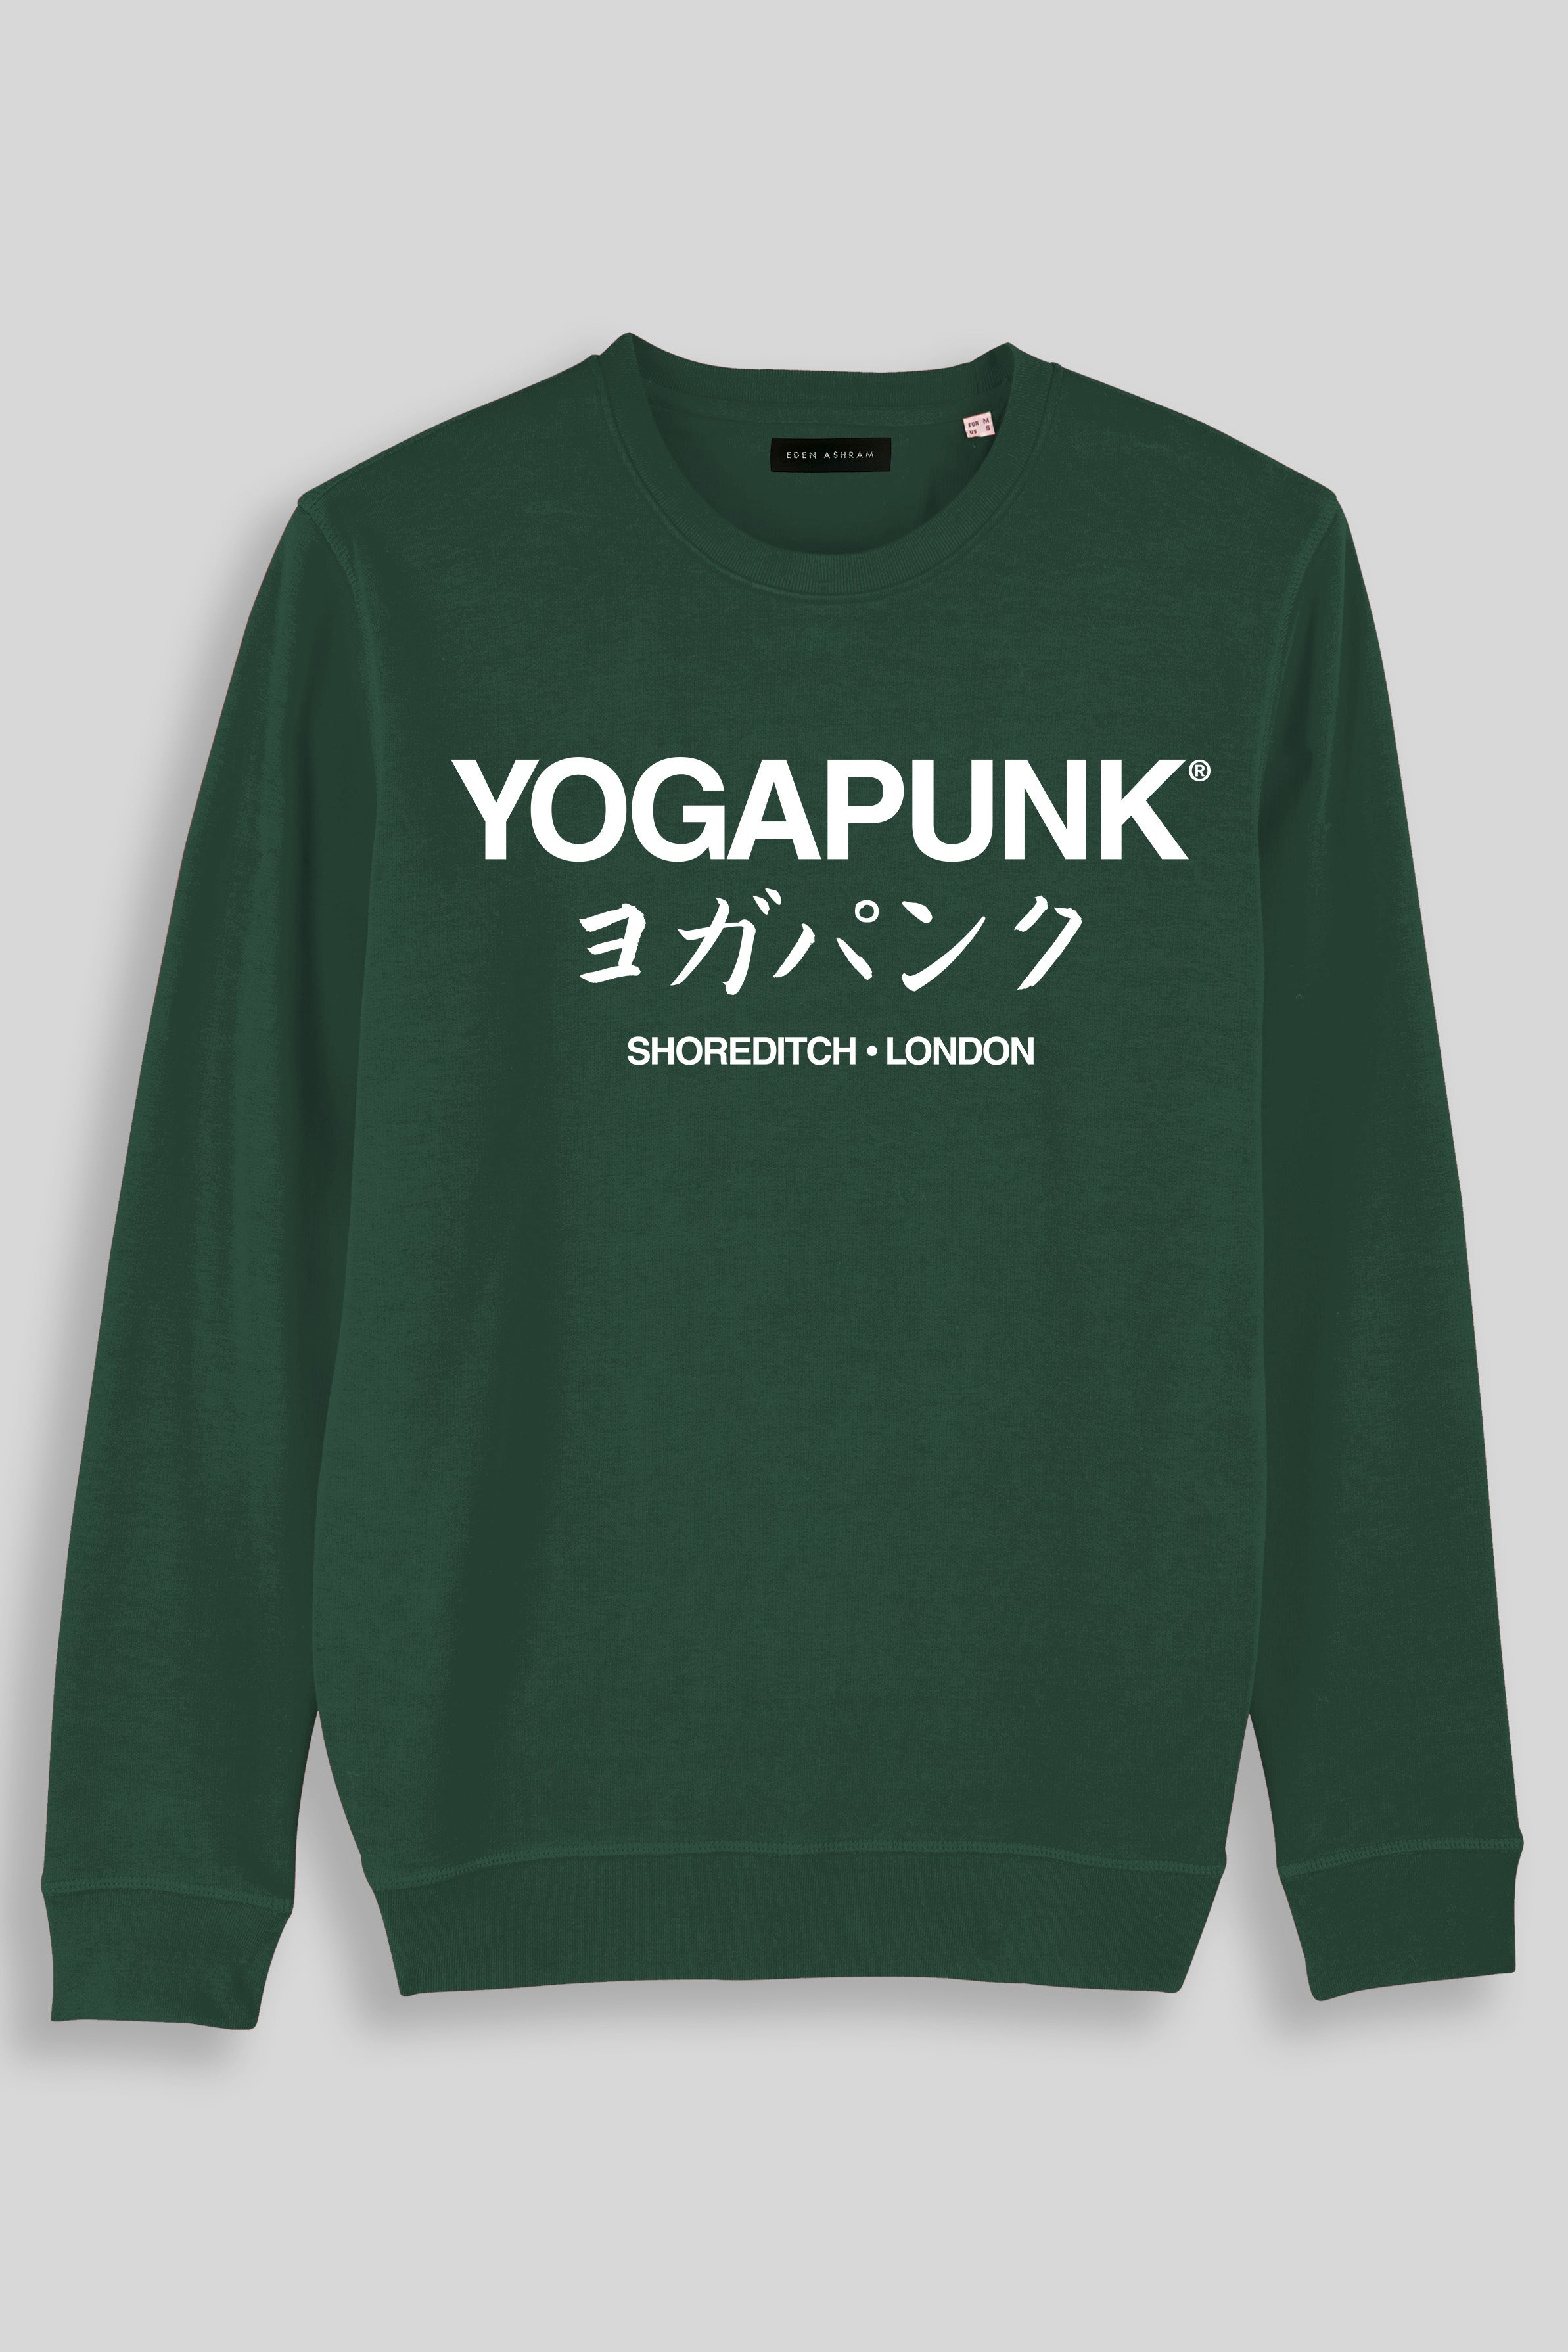 Eden Ashram Yoga Punk® Shoreditch Premium Crew Neck Sweatshirt Bottle Green